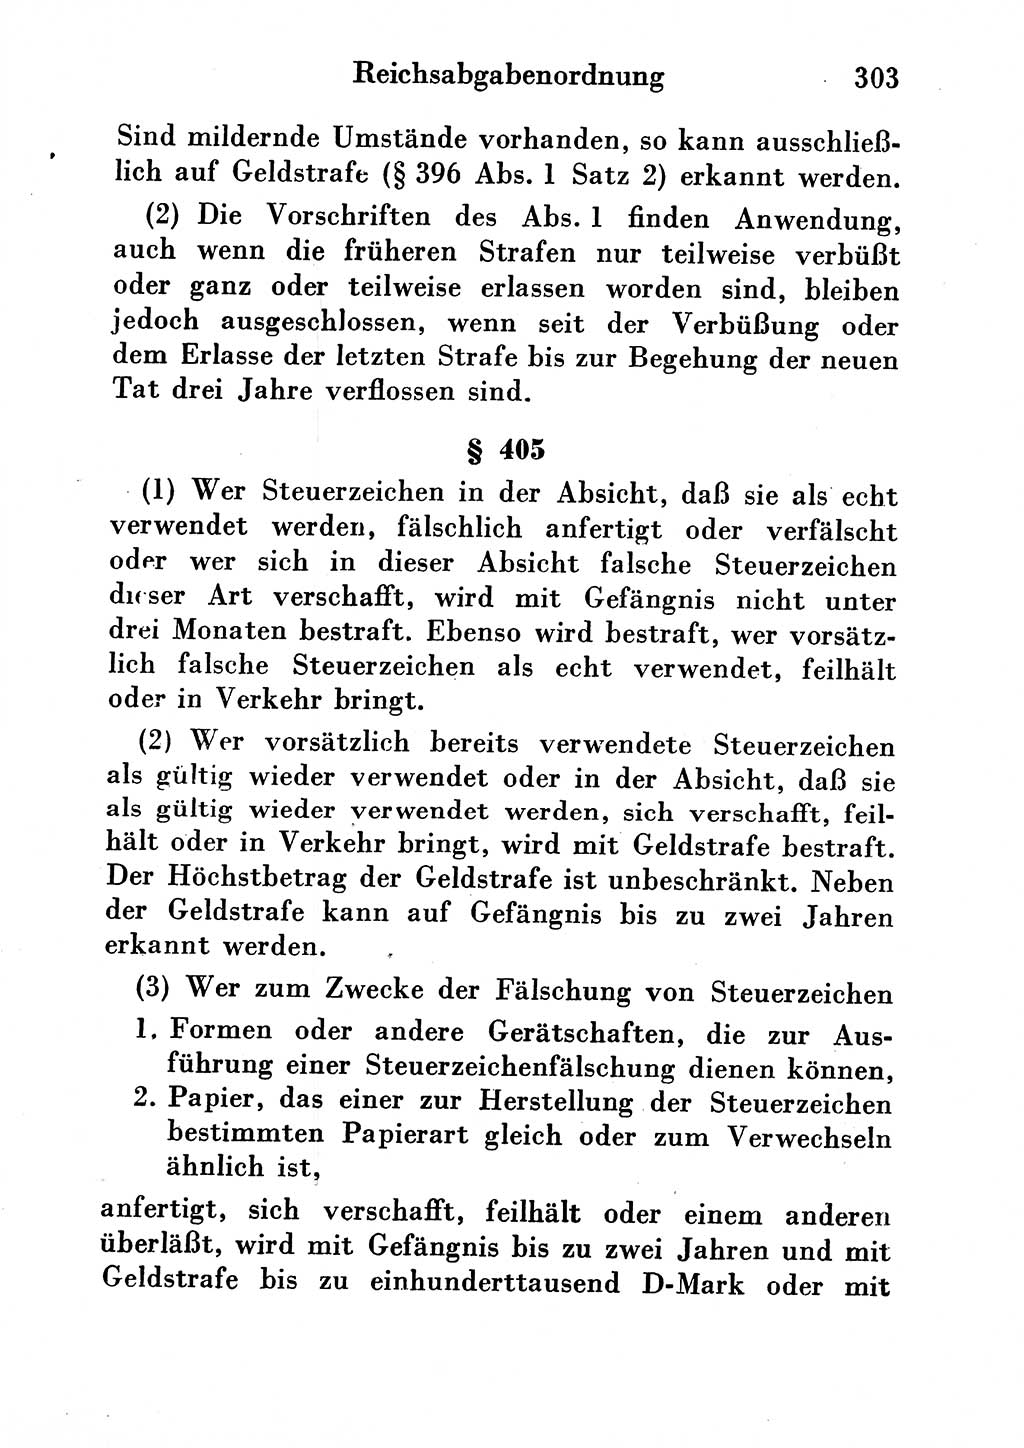 Strafgesetzbuch (StGB) und andere Strafgesetze [Deutsche Demokratische Republik (DDR)] 1954, Seite 303 (StGB Strafges. DDR 1954, S. 303)